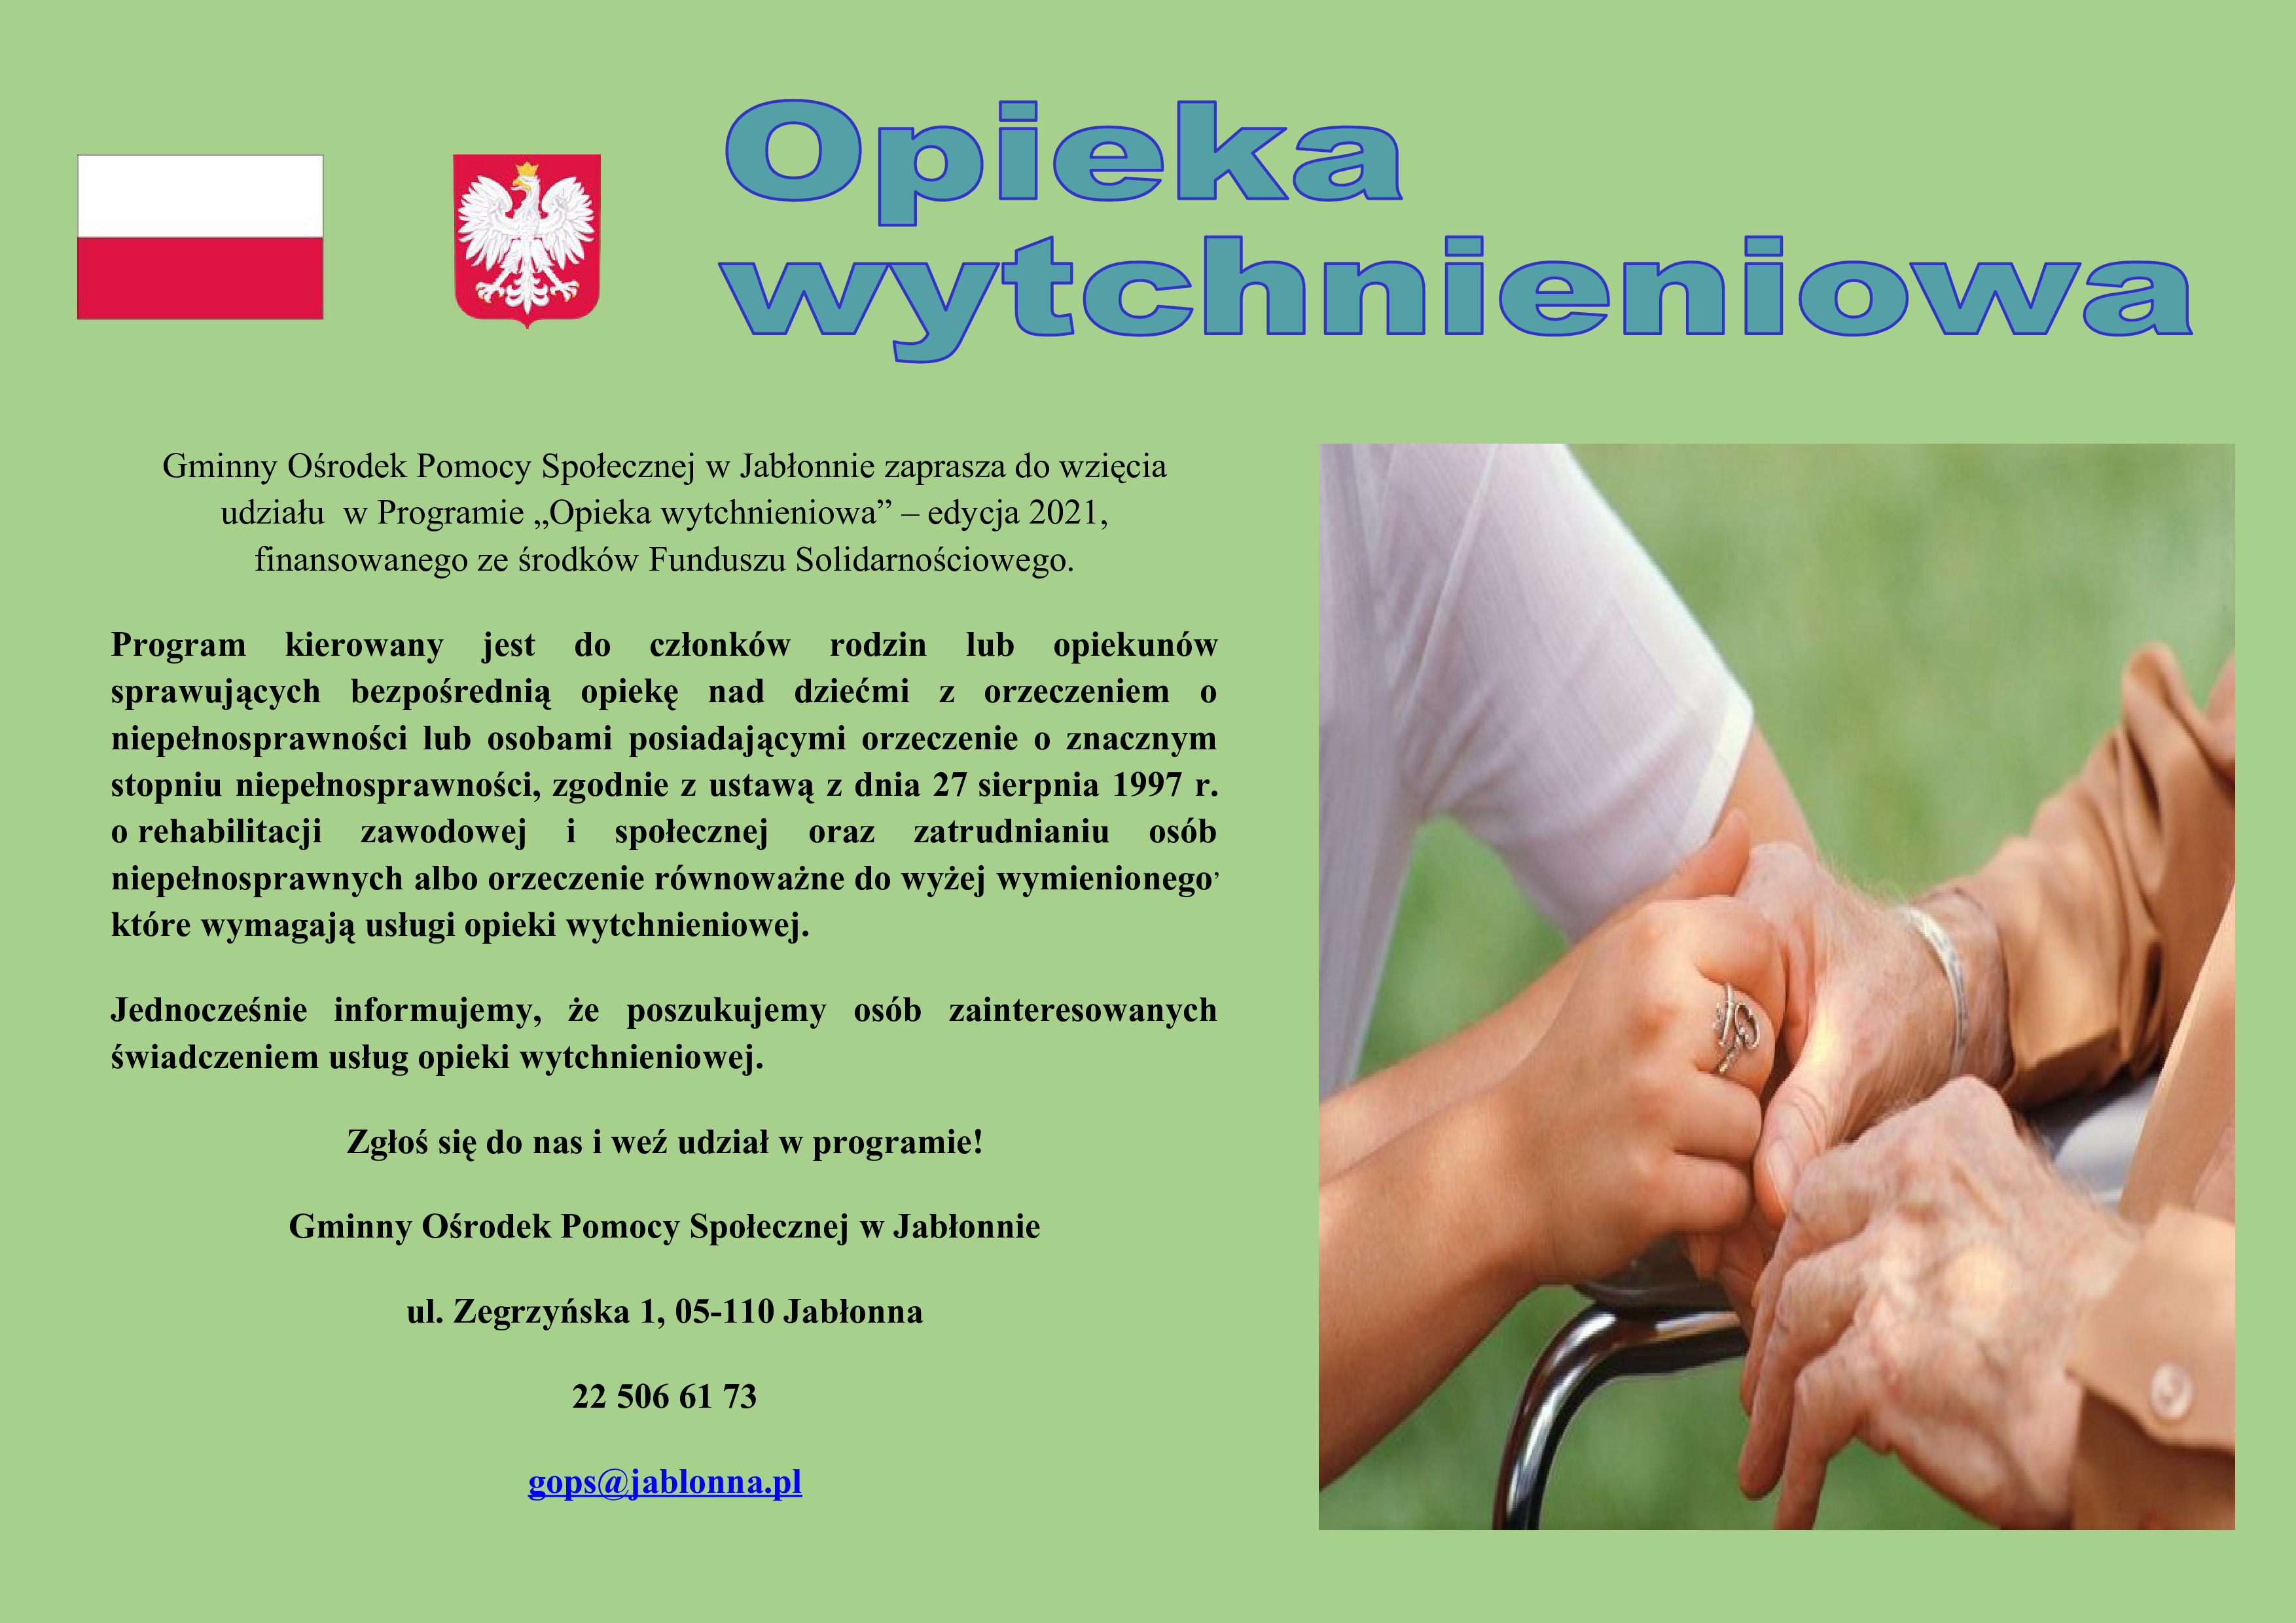  Plakat informujący o programie skierowanym dla osób z niepełnosprawnością oraz ich rodzin pod nazwą "Opieka wytchnieniowa".